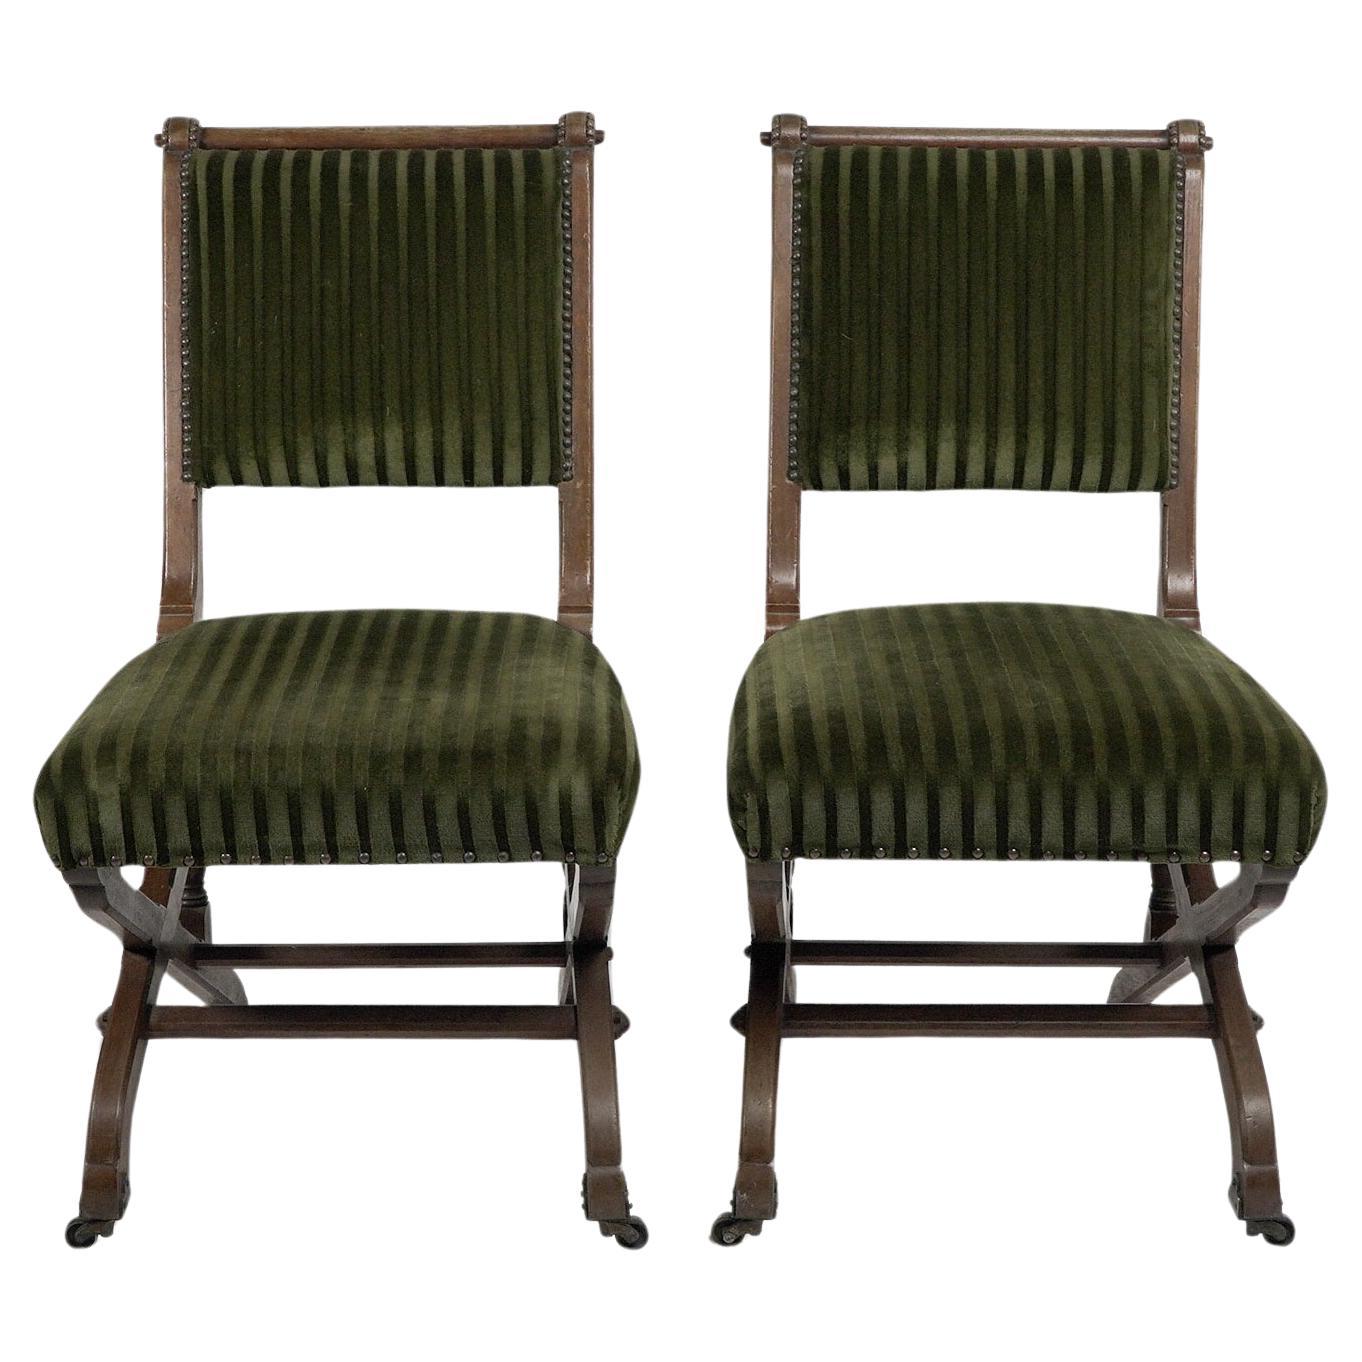 Charles Bevan unter Lizenz von Marsh Jones & Cribb. Ein Paar Beistellstühle im Stil der Gotik, mit einem Rahmen aus Eichenholz mit Zapfen und Beinen im Scherenstil auf den ursprünglichen dekorativen Messing- und Keramikrollen. Sie folgen dem Design